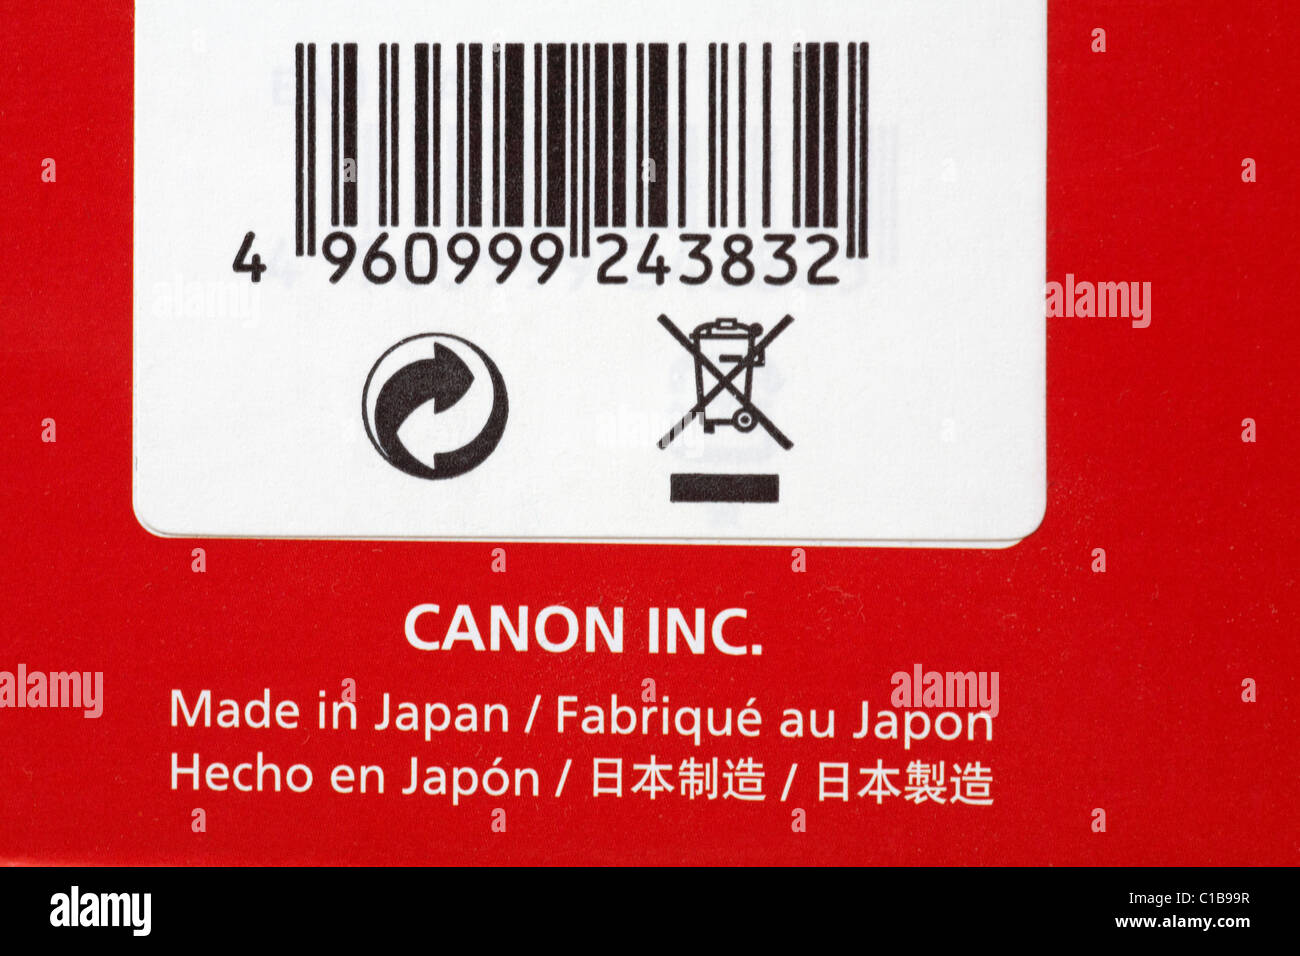 Prodotto in Giappone e codice a barre con istruzioni per lo smaltimento - sulla scatola dell'apparecchiatura fotografica Canon pistola flash Speedlite - simbolo del logo riciclo Foto Stock